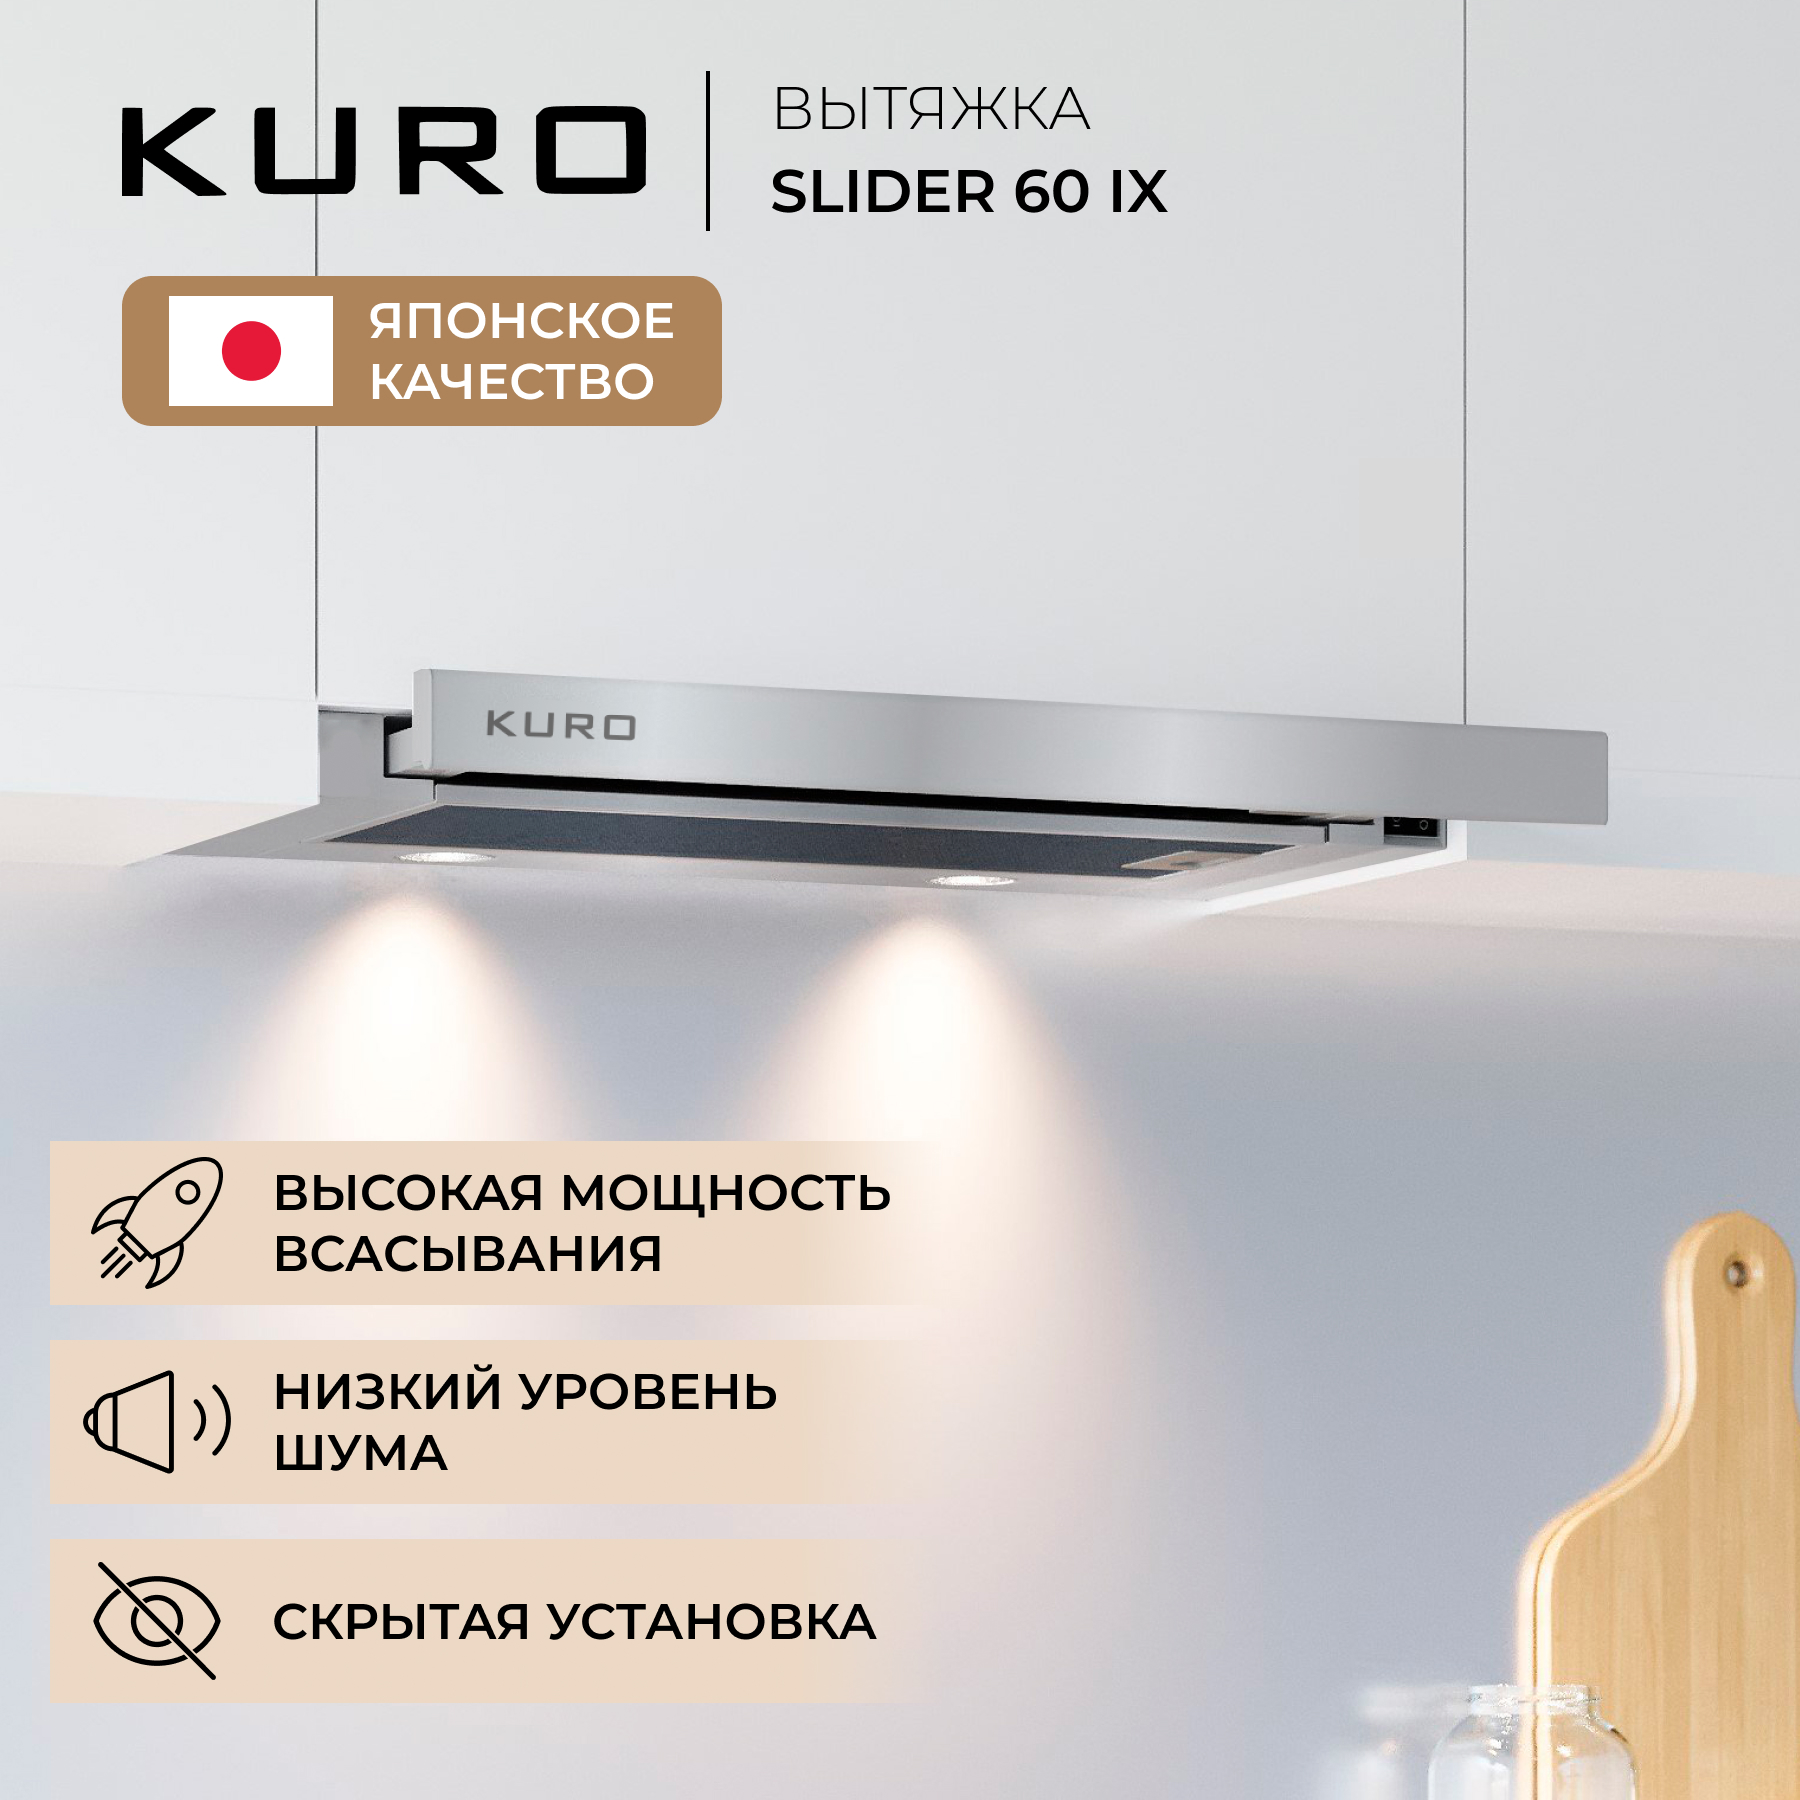 Вытяжка встраиваемая KURO SLIDER 60 IX серебристая вытяжка встраиваемая kuro slider 60 ix серебристая